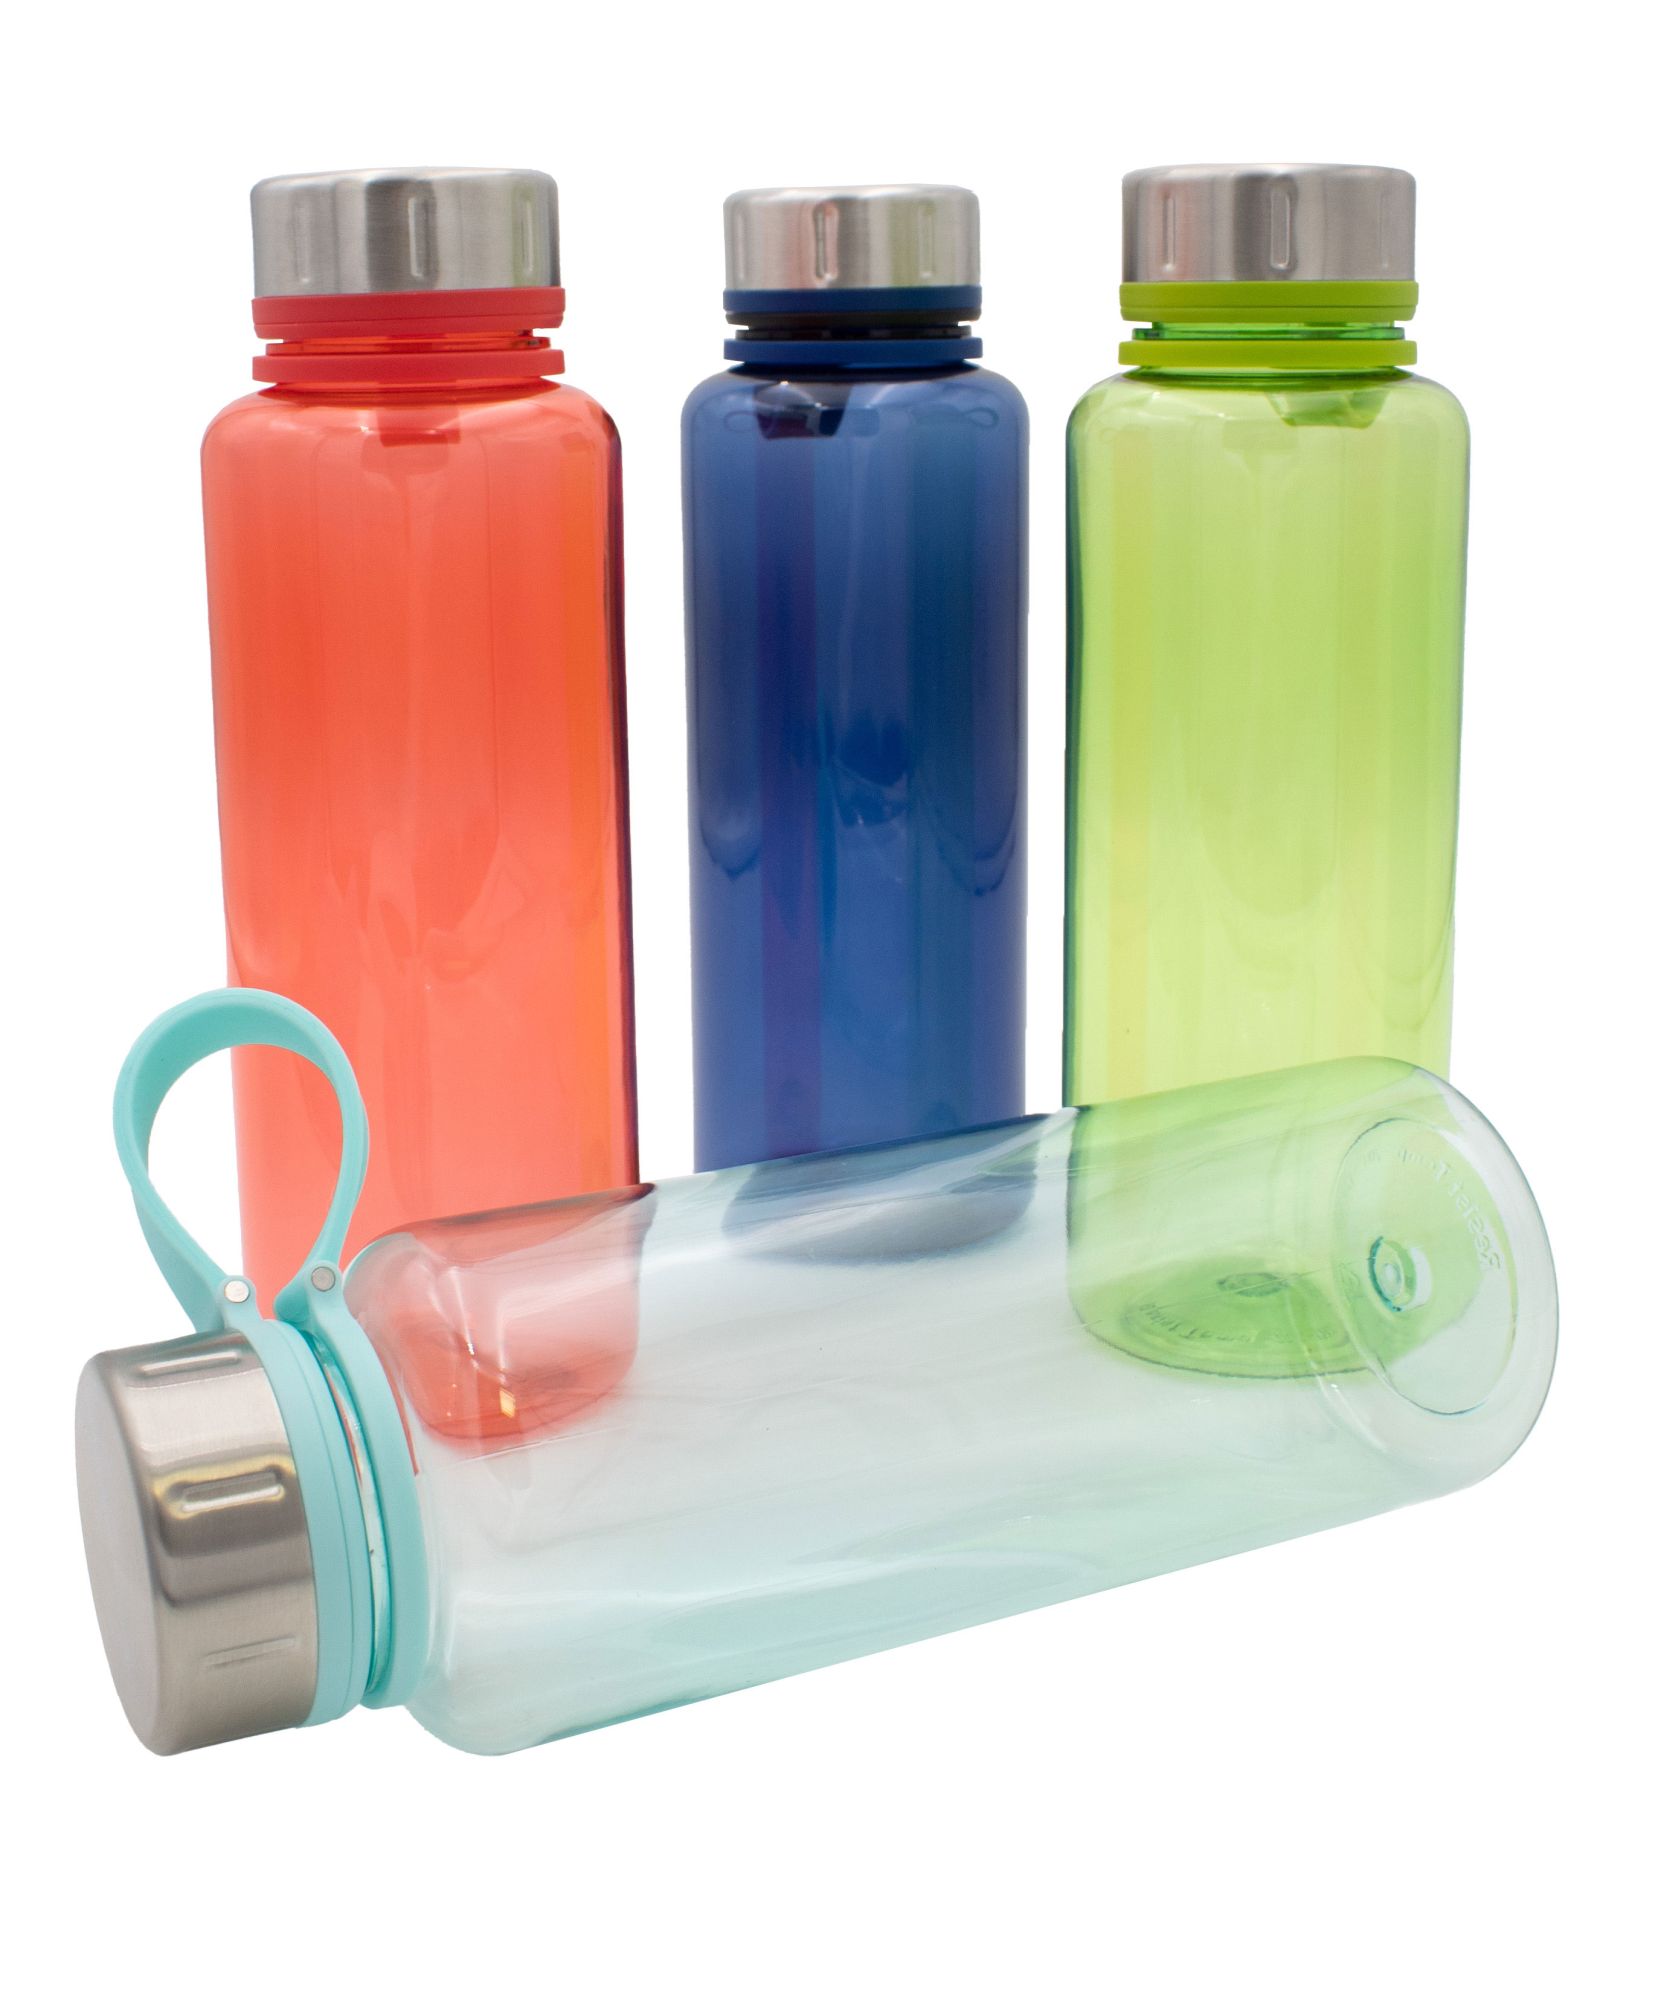 Steuber Trinkflasche Steel-Top 1000ml, Farbe wählbar, Kunststoff- Trinkflasche mit Edelstahldeckel